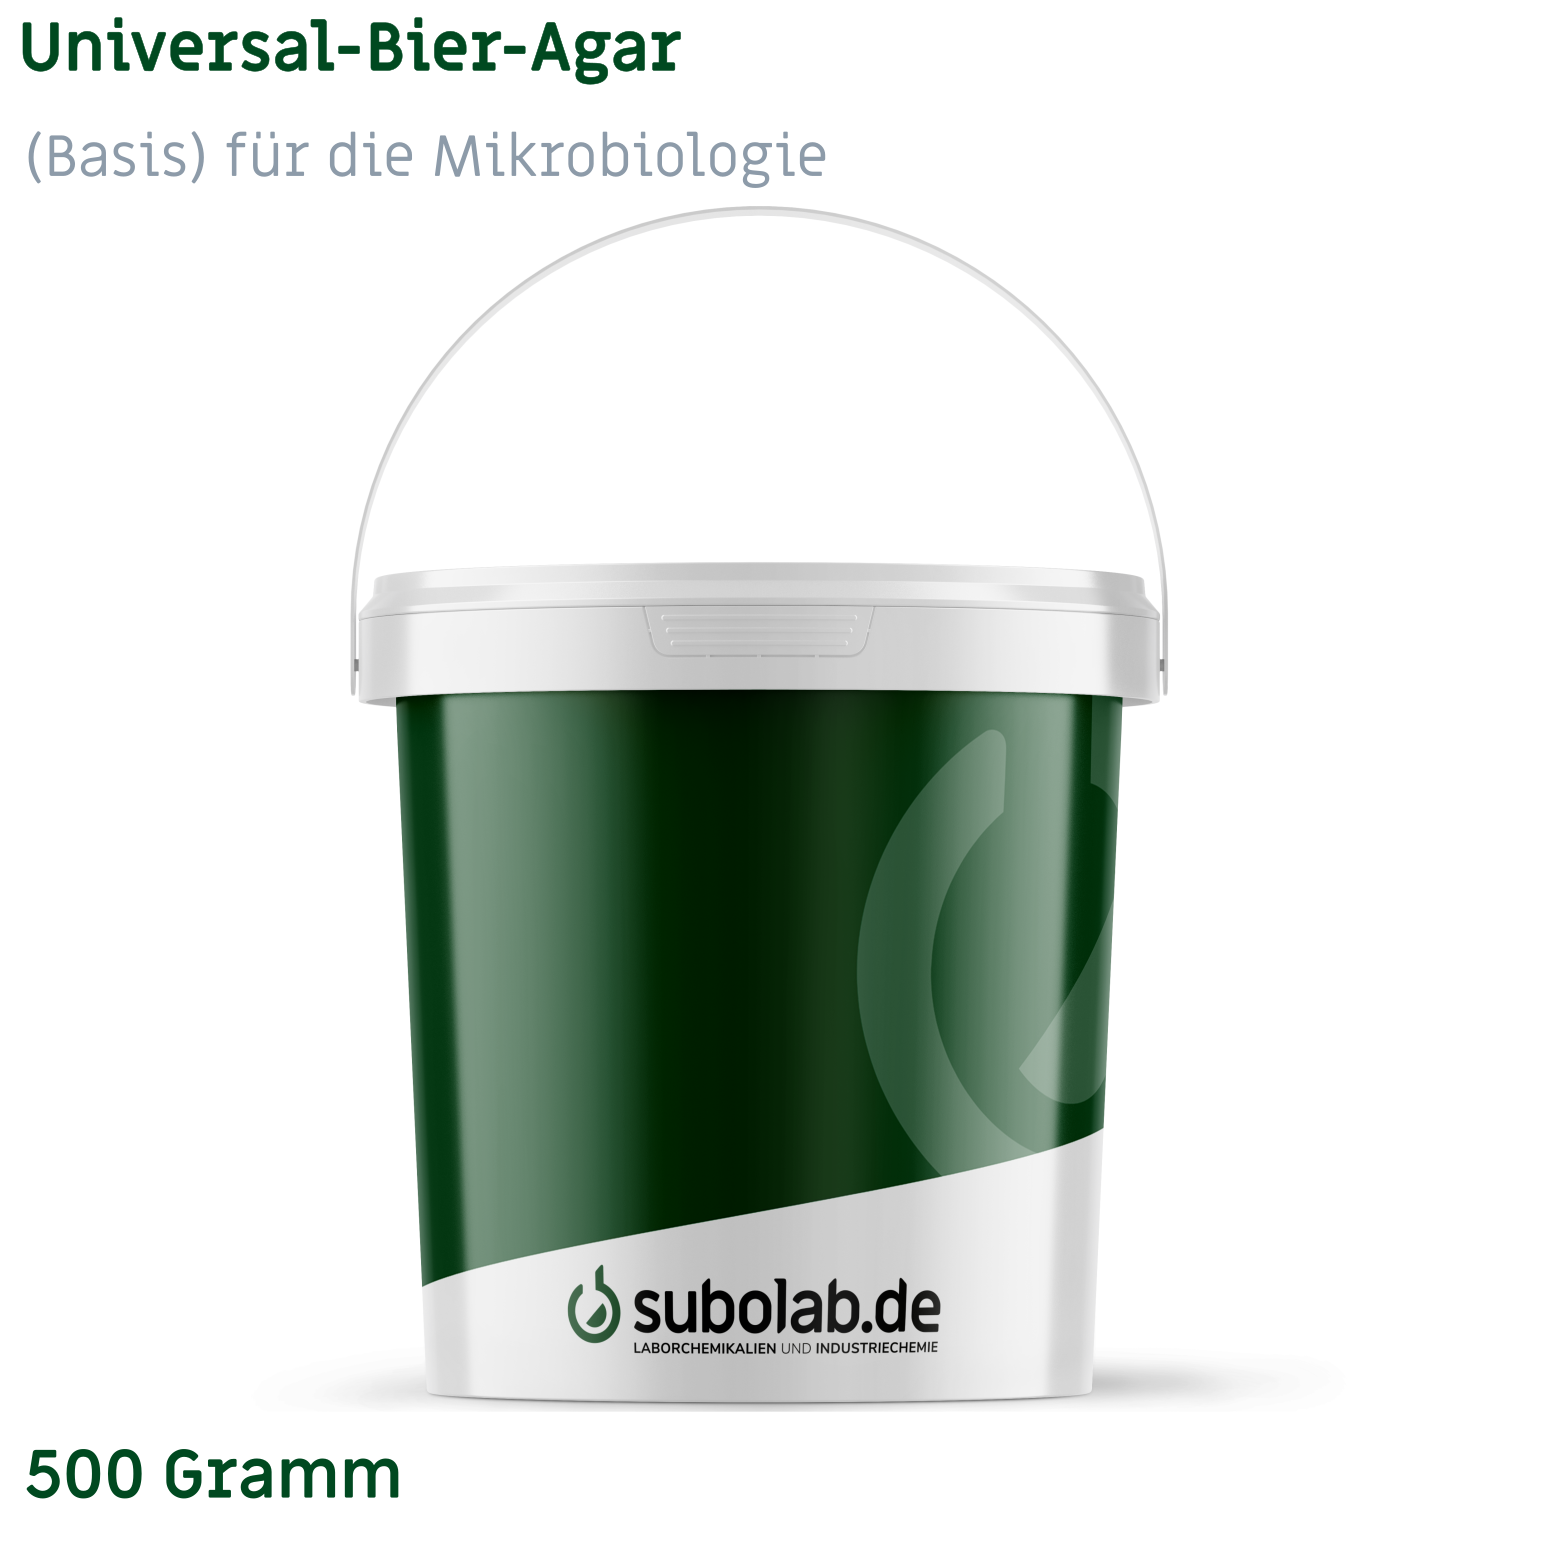 Bild von Universal-Bier-Agar (Basis) für die Mikrobiologie (500 Gramm)